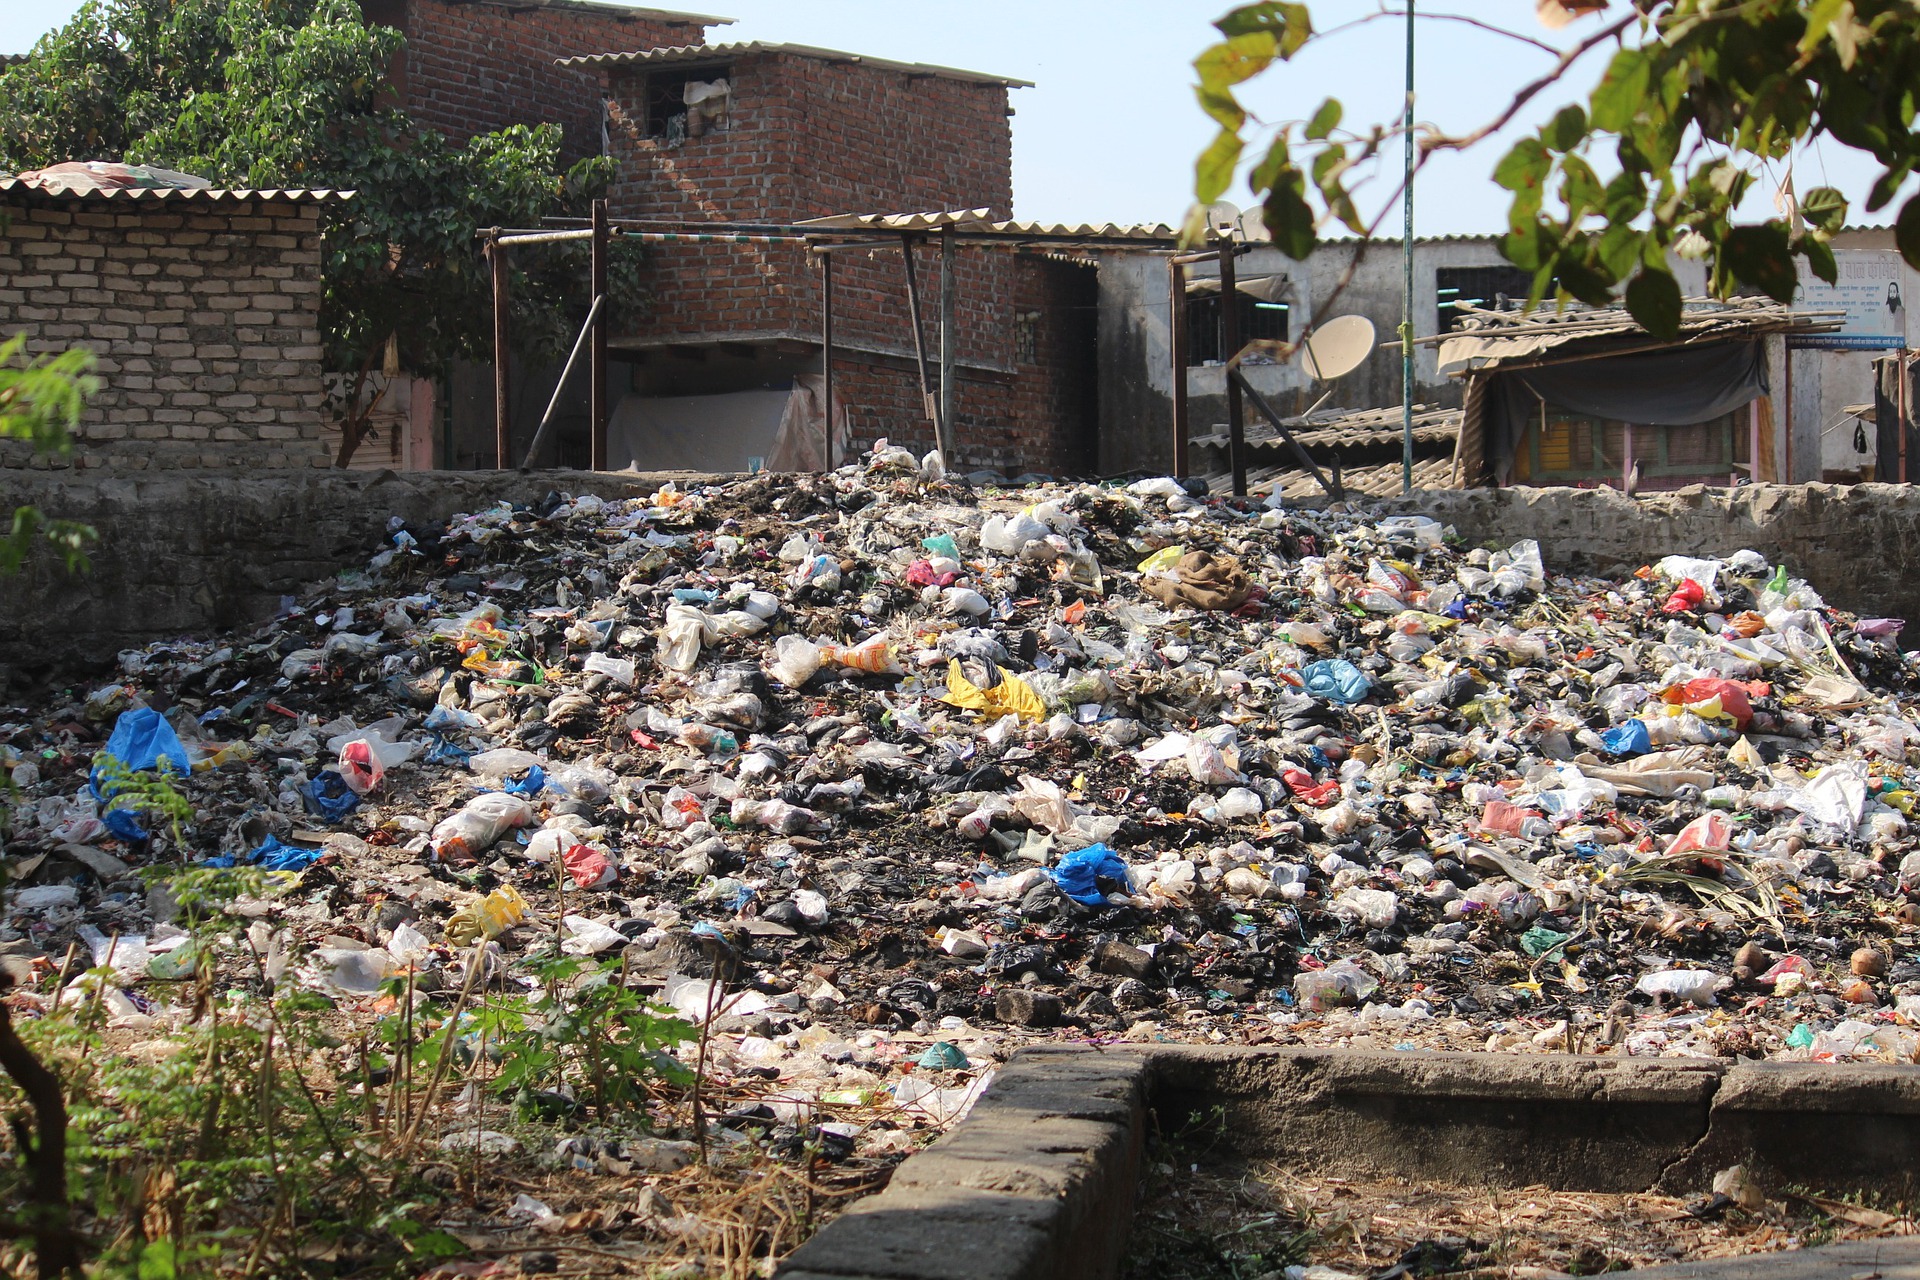 Volontariato internazionale in India in un progetto ecologico contro la combustione della plastica